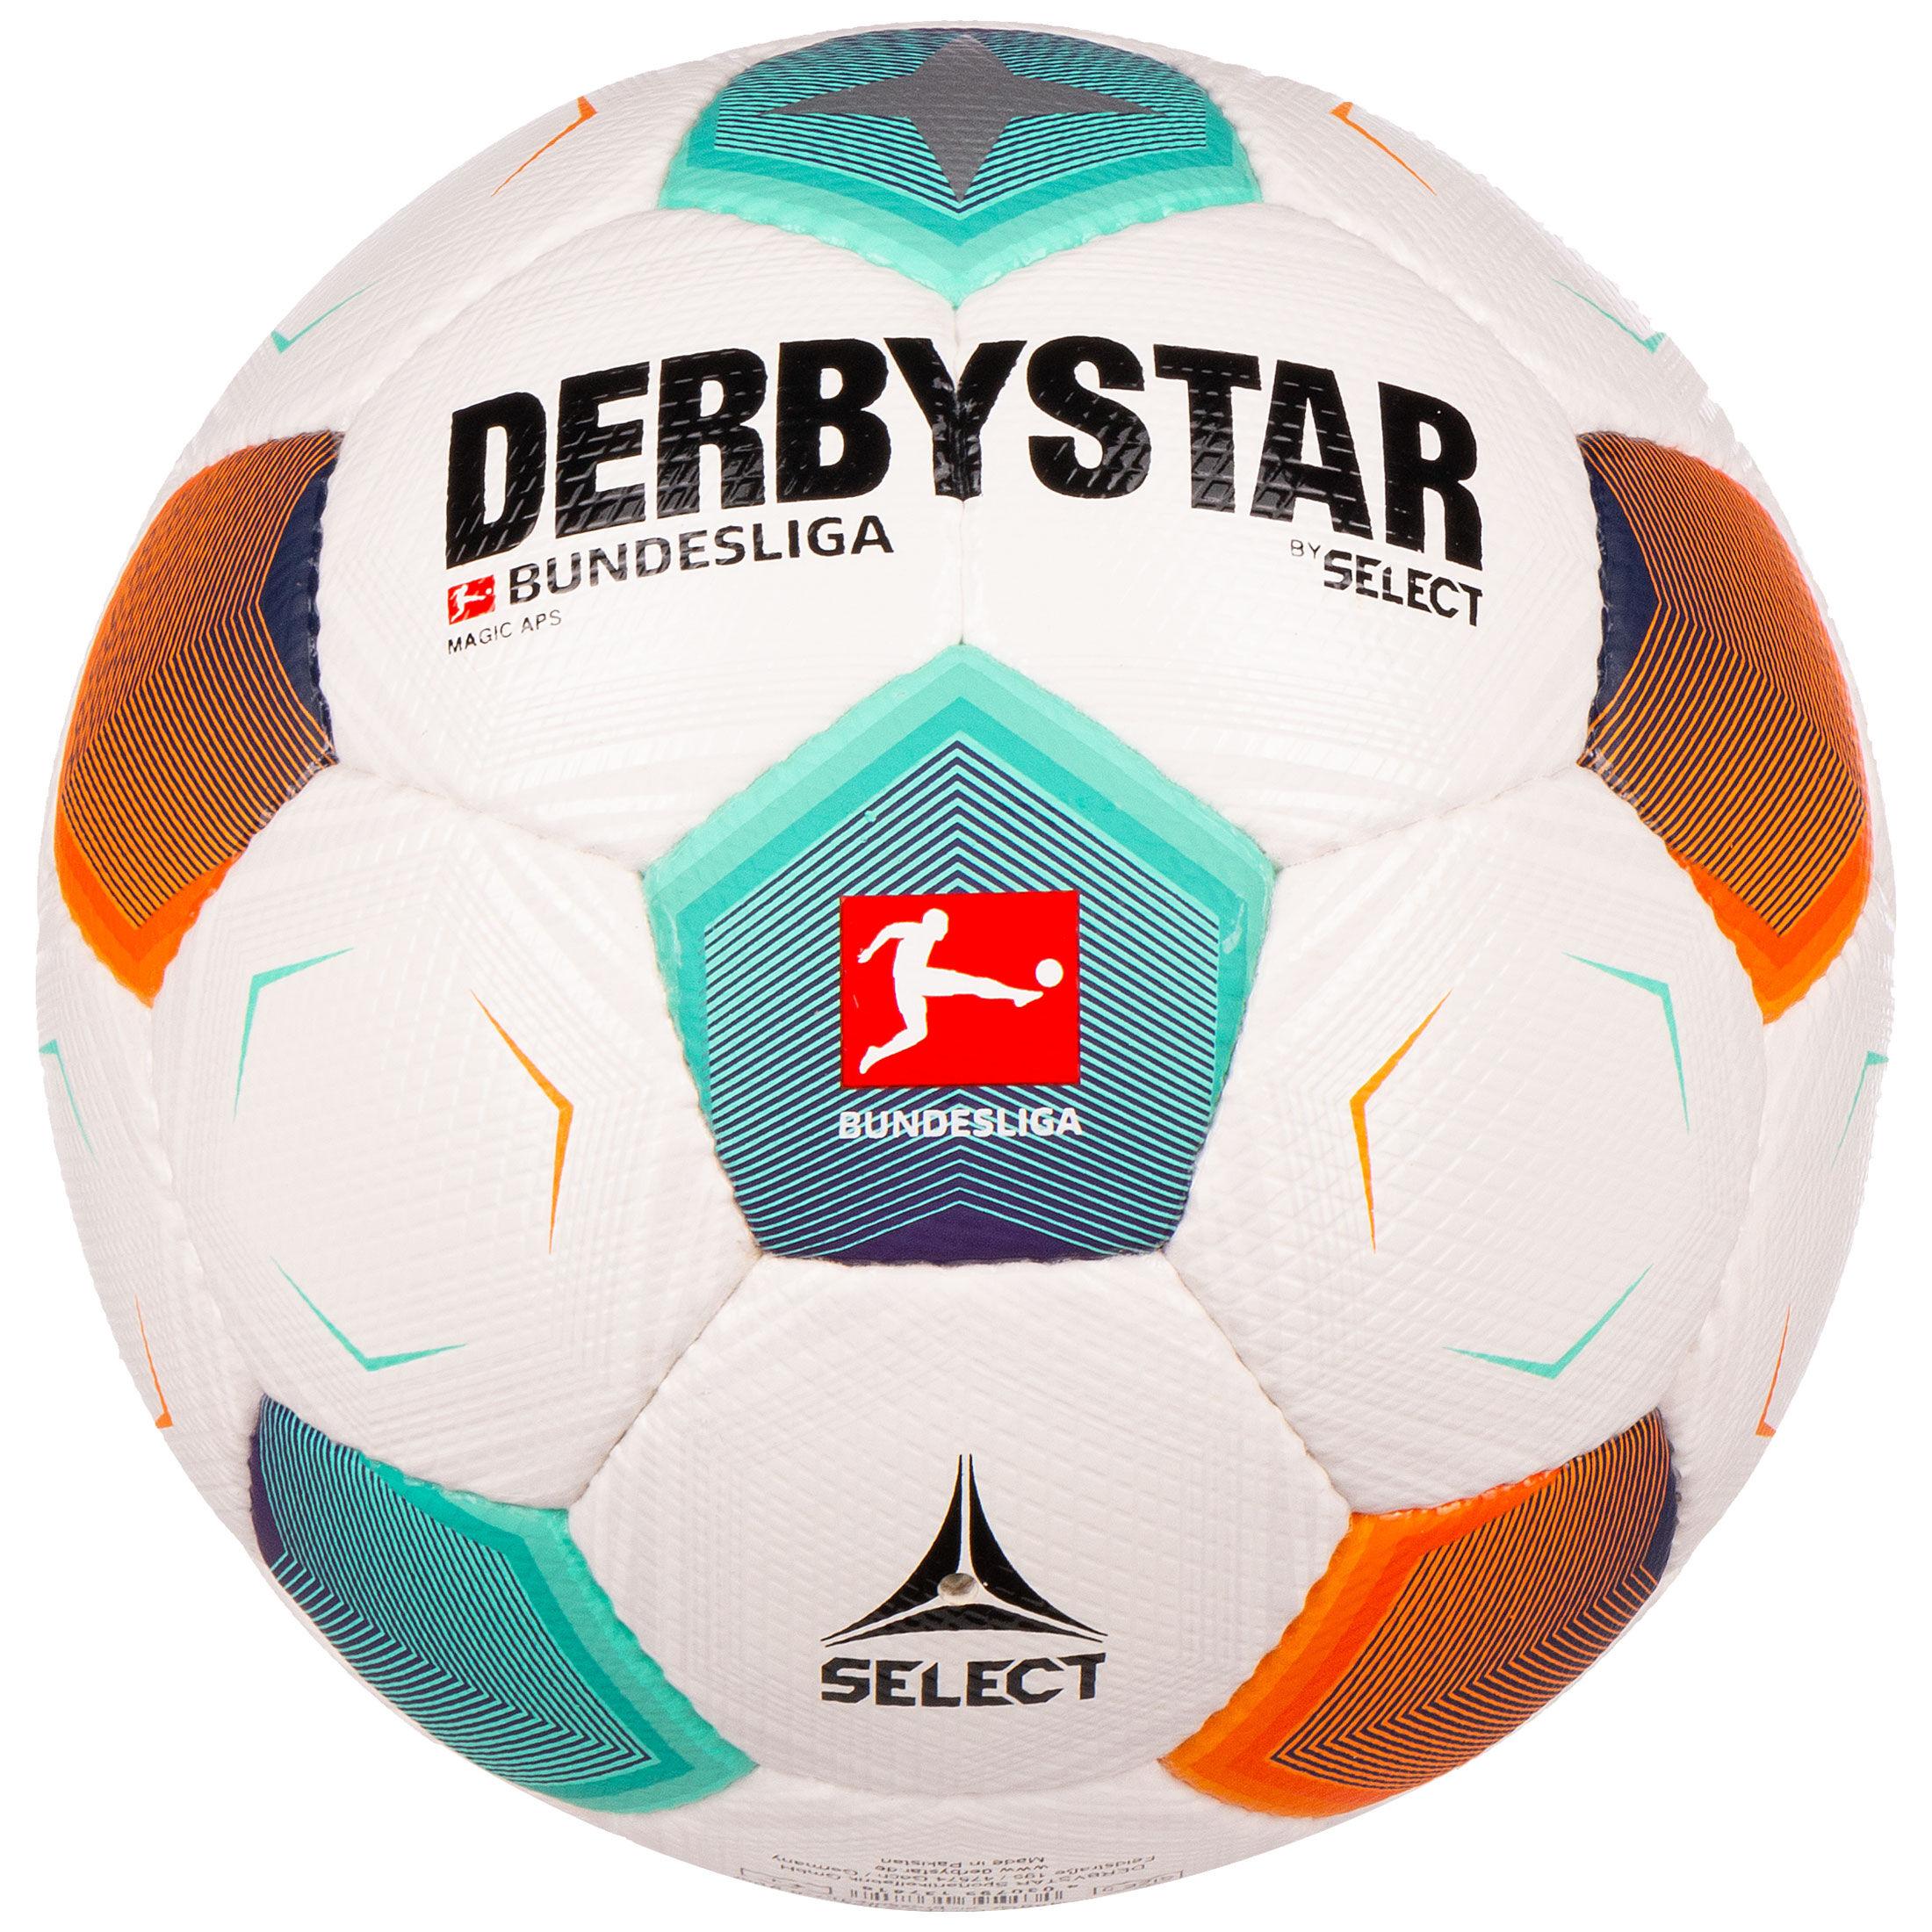 Online von Magic kaufen Shop Derbystar Fußball v23 Bundesliga türkis / im SportScheck APS weiß